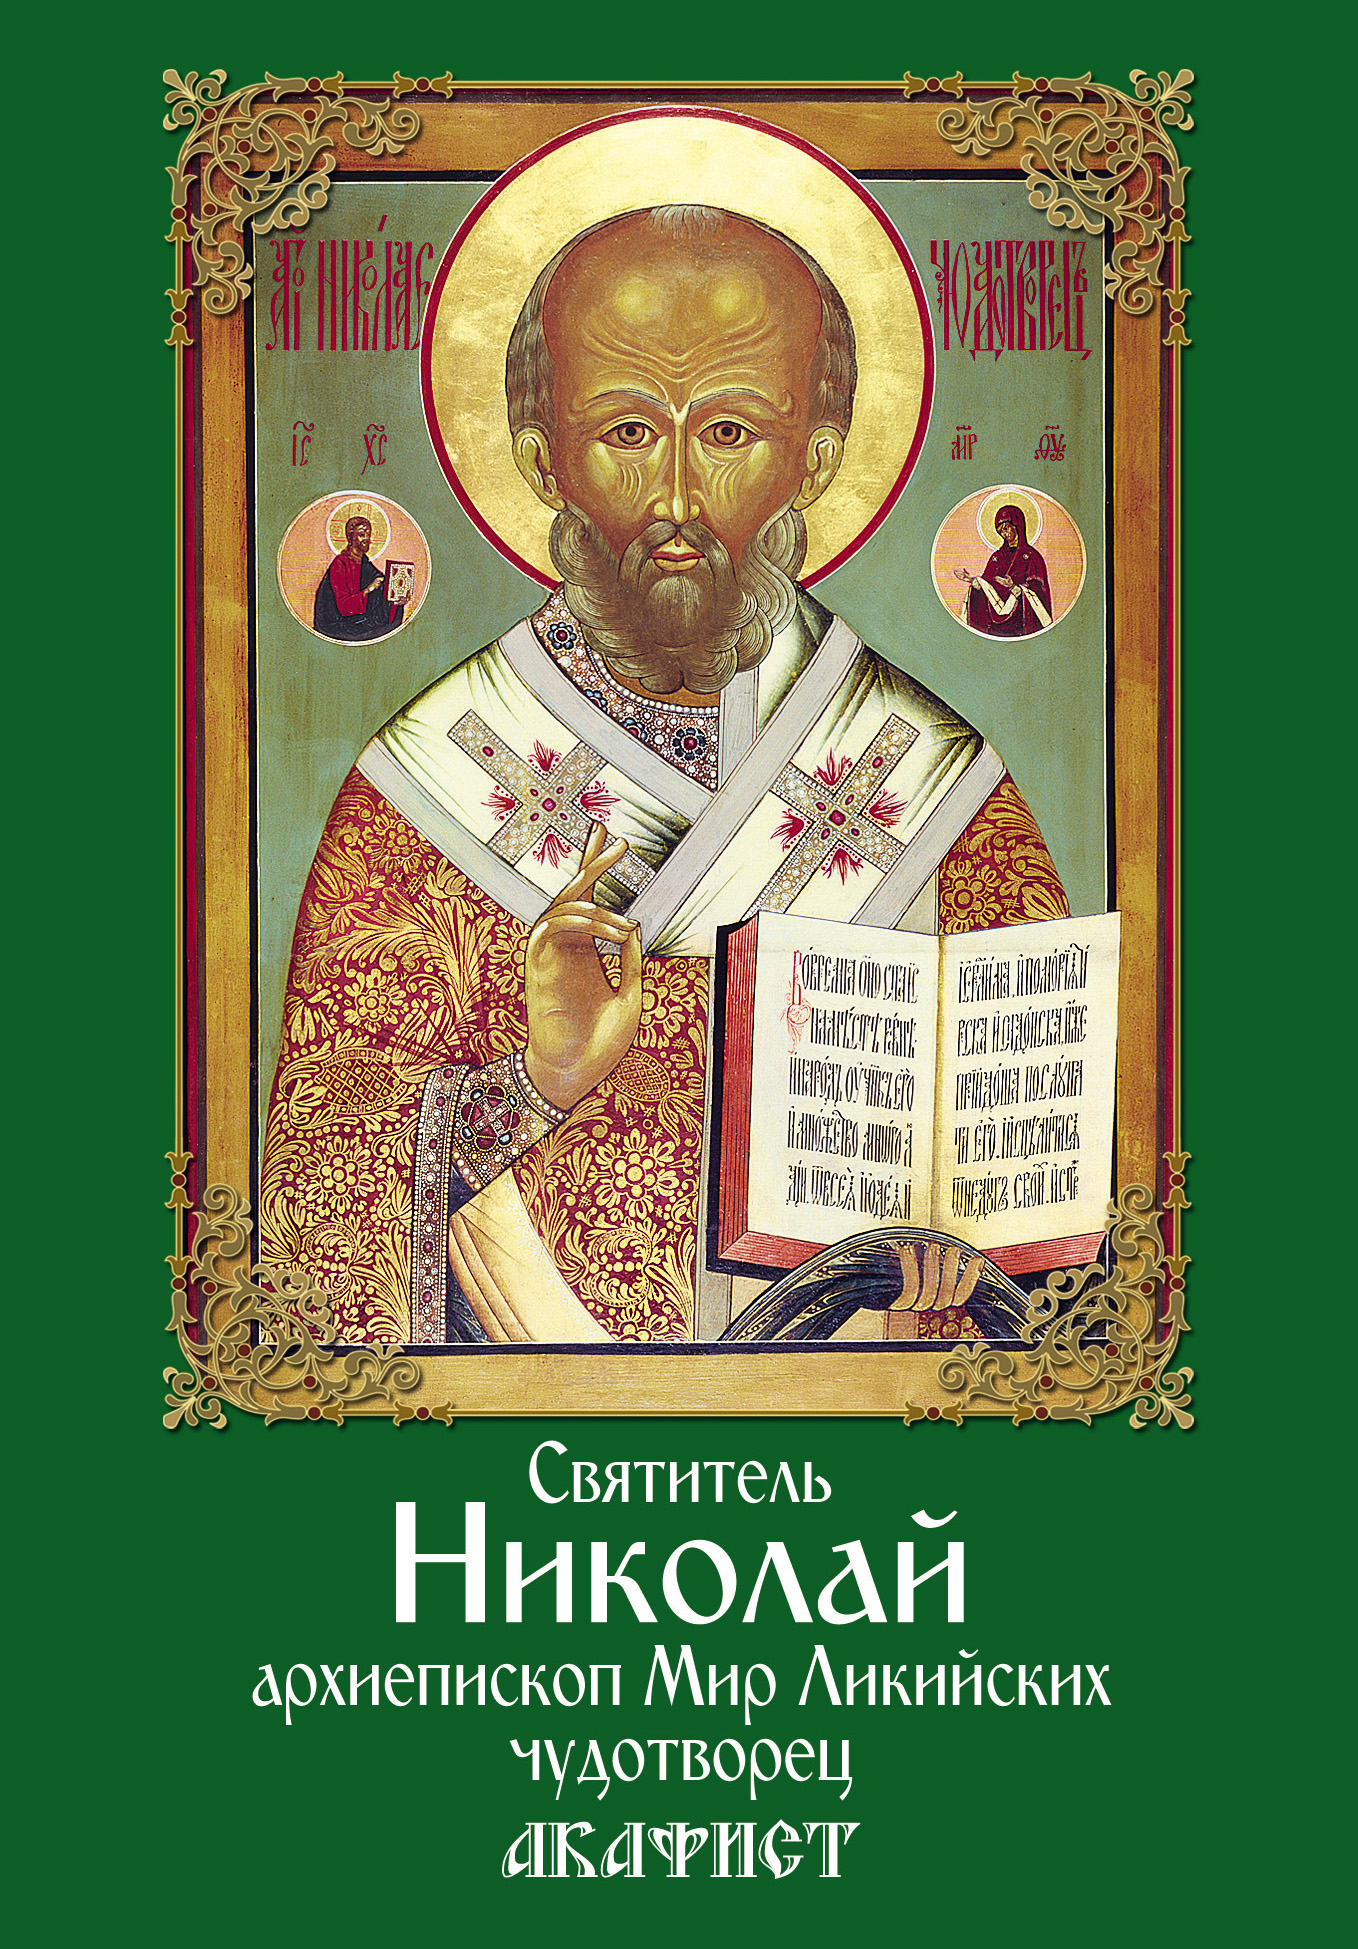 Святитель Николай, архиепископ Мир Ликийских, чудотворец. Акафист